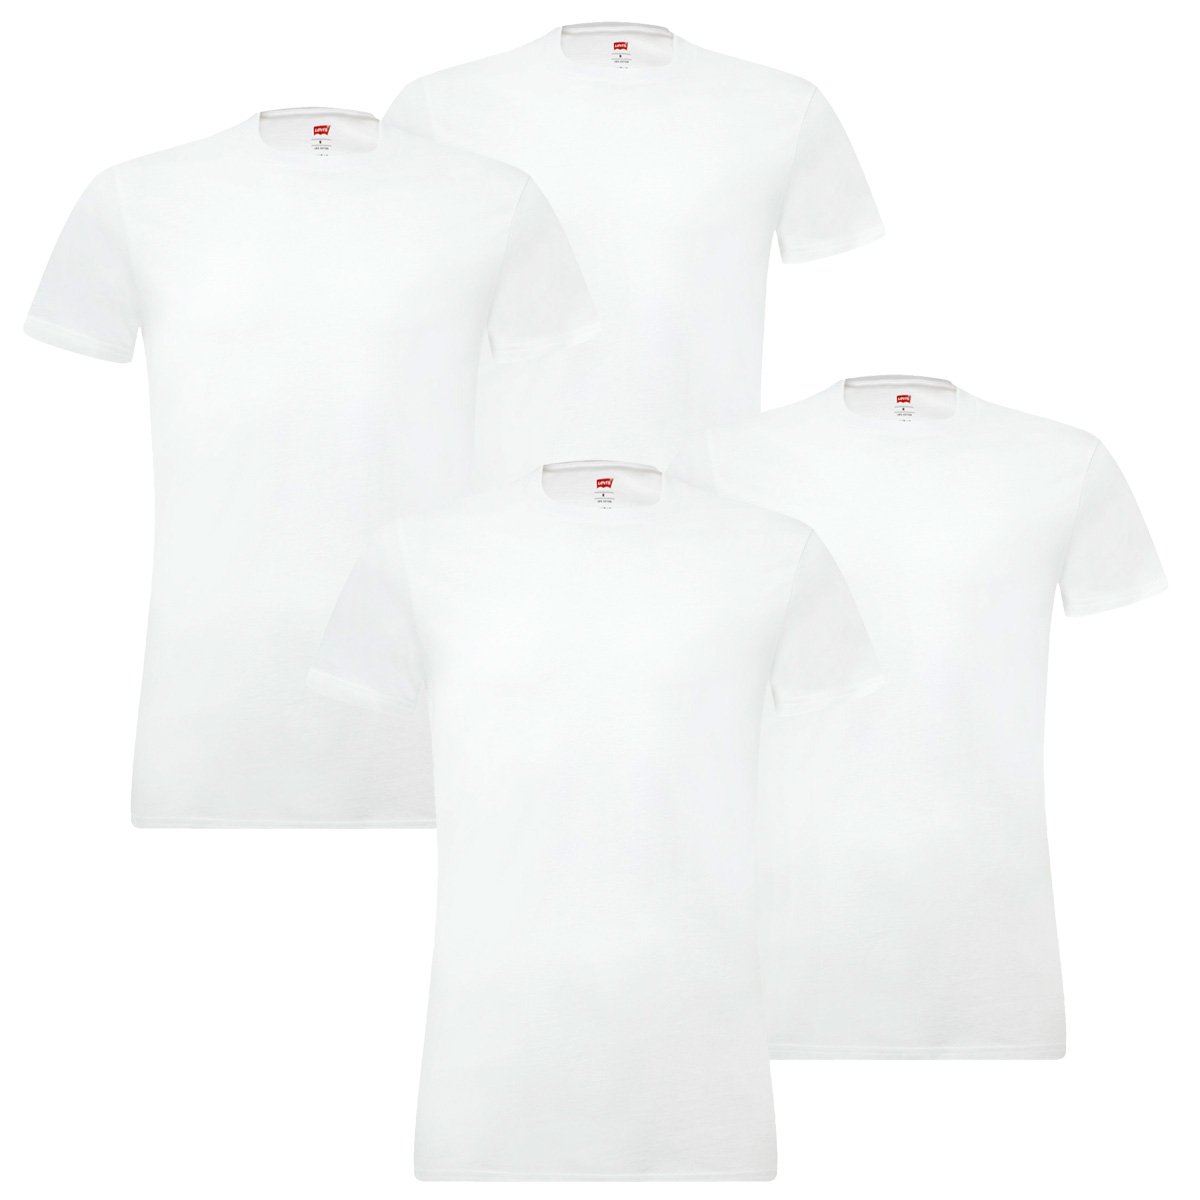 4 er Pack Levis 200SF Crew T-Shirt Men Herren Unterhemd Rundhals, Bekleidungsgröße:M, Farbe:300 - White